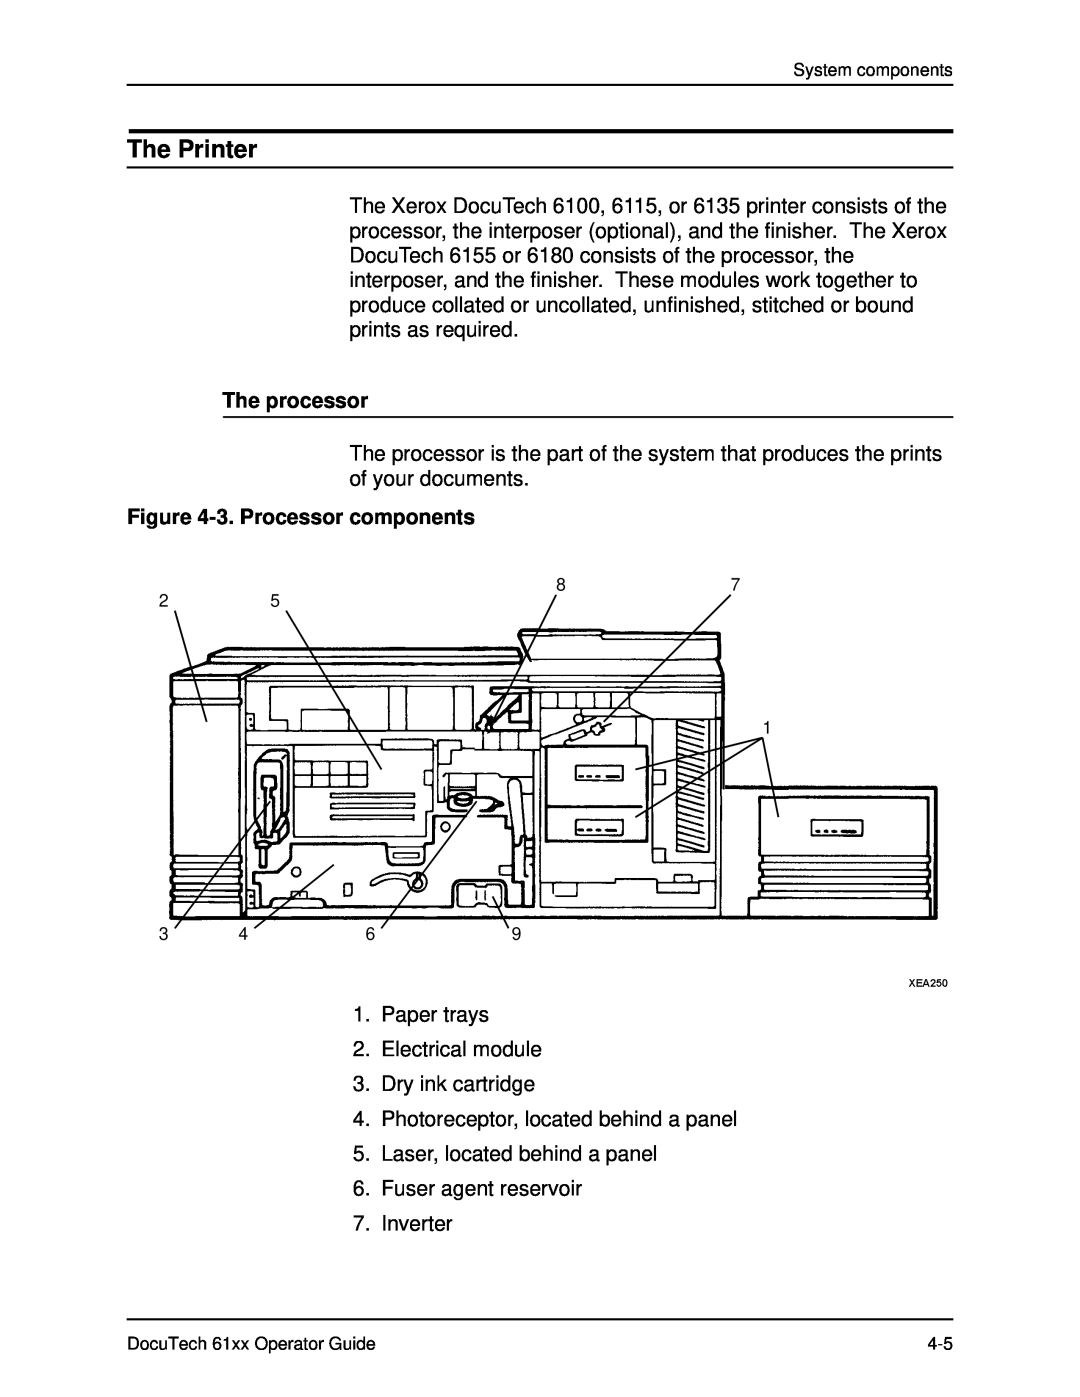 Xerox 61xx manual The Printer, The processor, 3. Processor components 